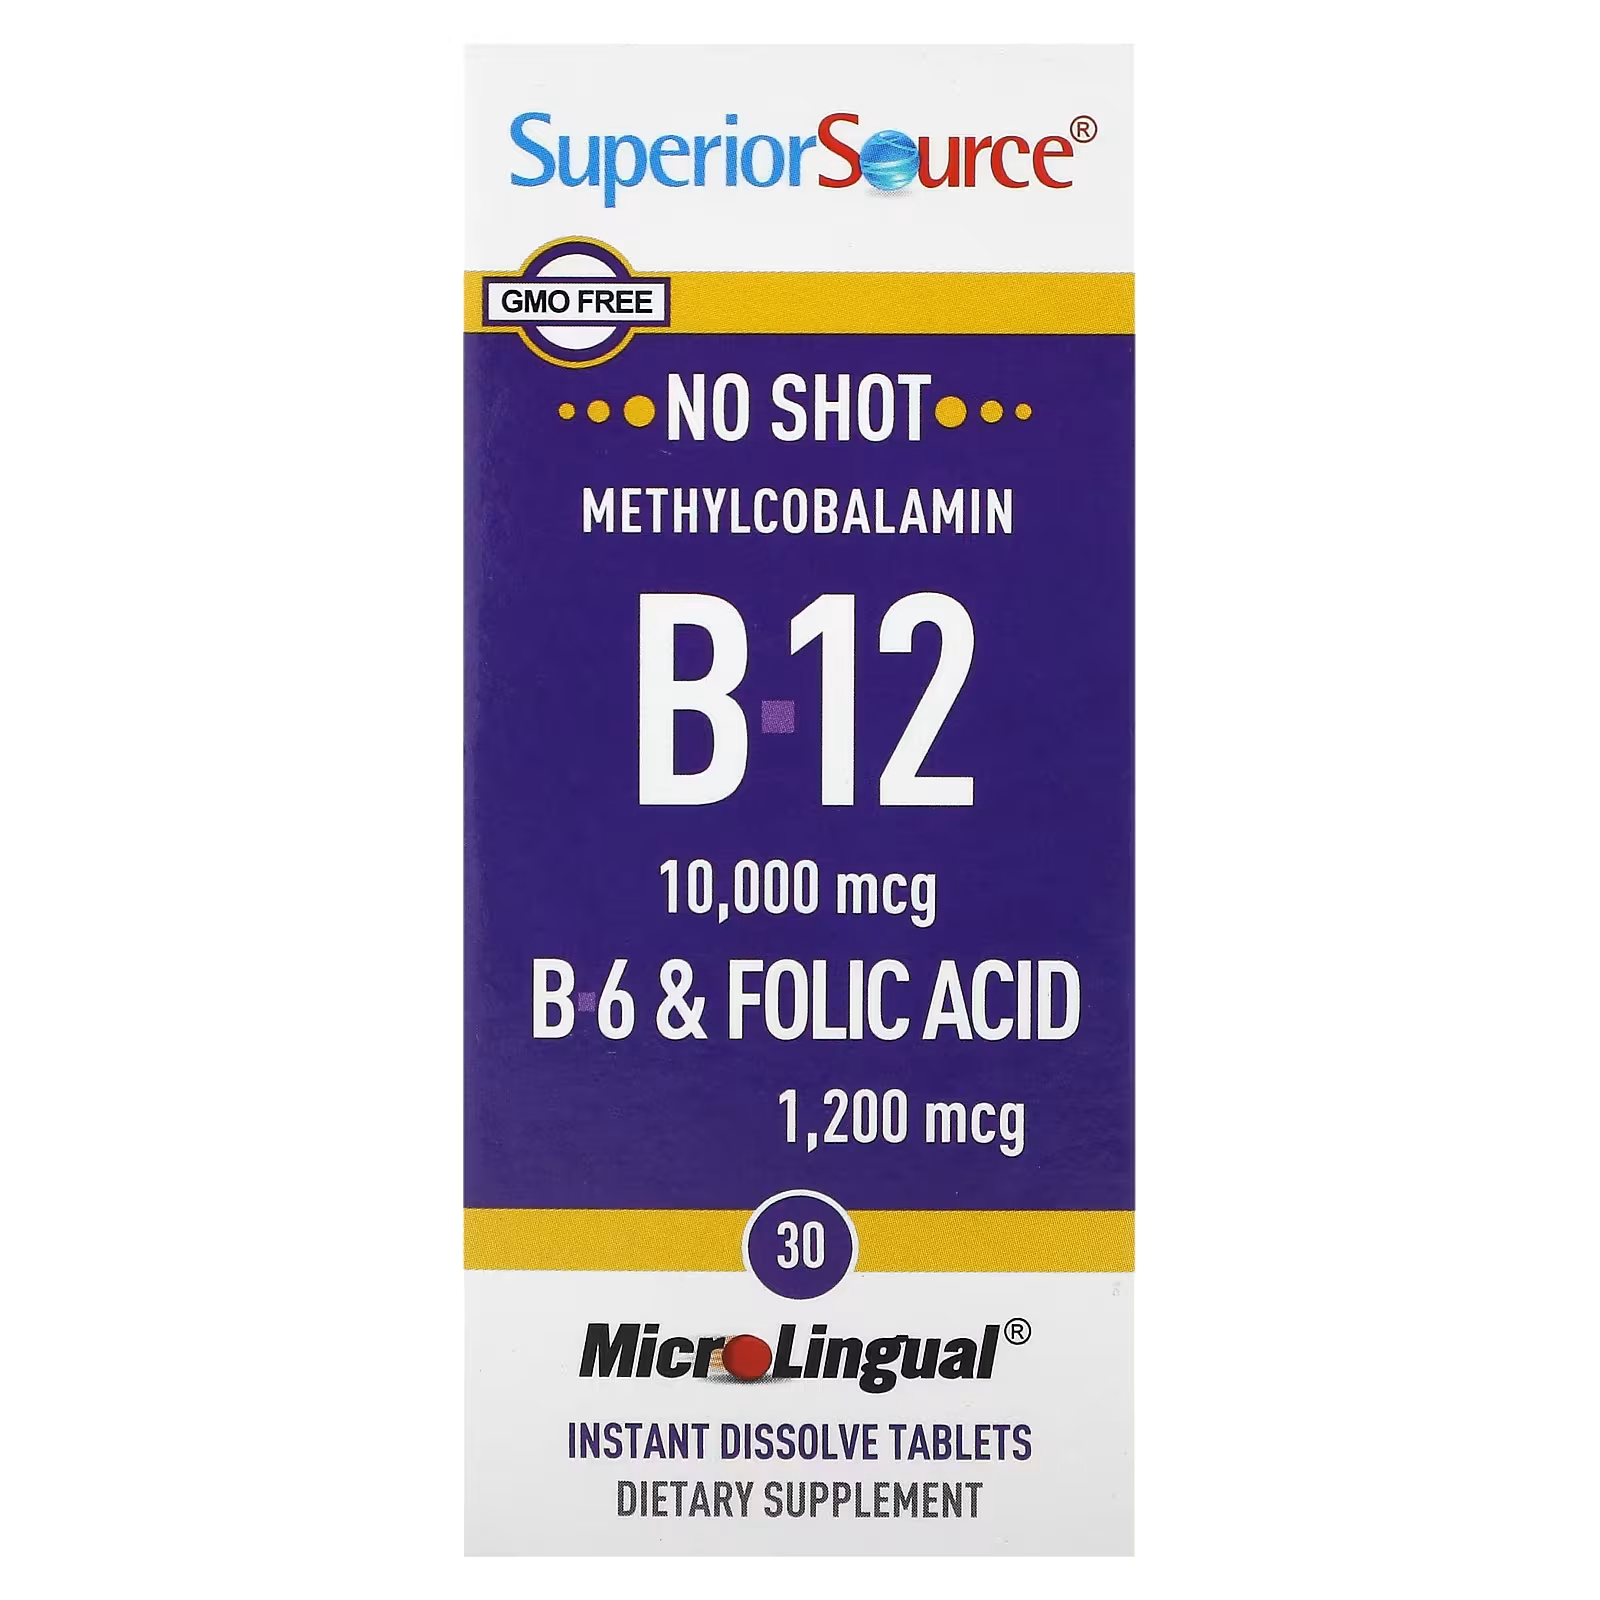 цена Метилкобаламин B-12 B-6 и фолиевая кислота MicroLingual Superior Source высшего качества, 30 растворяющихся таблеток